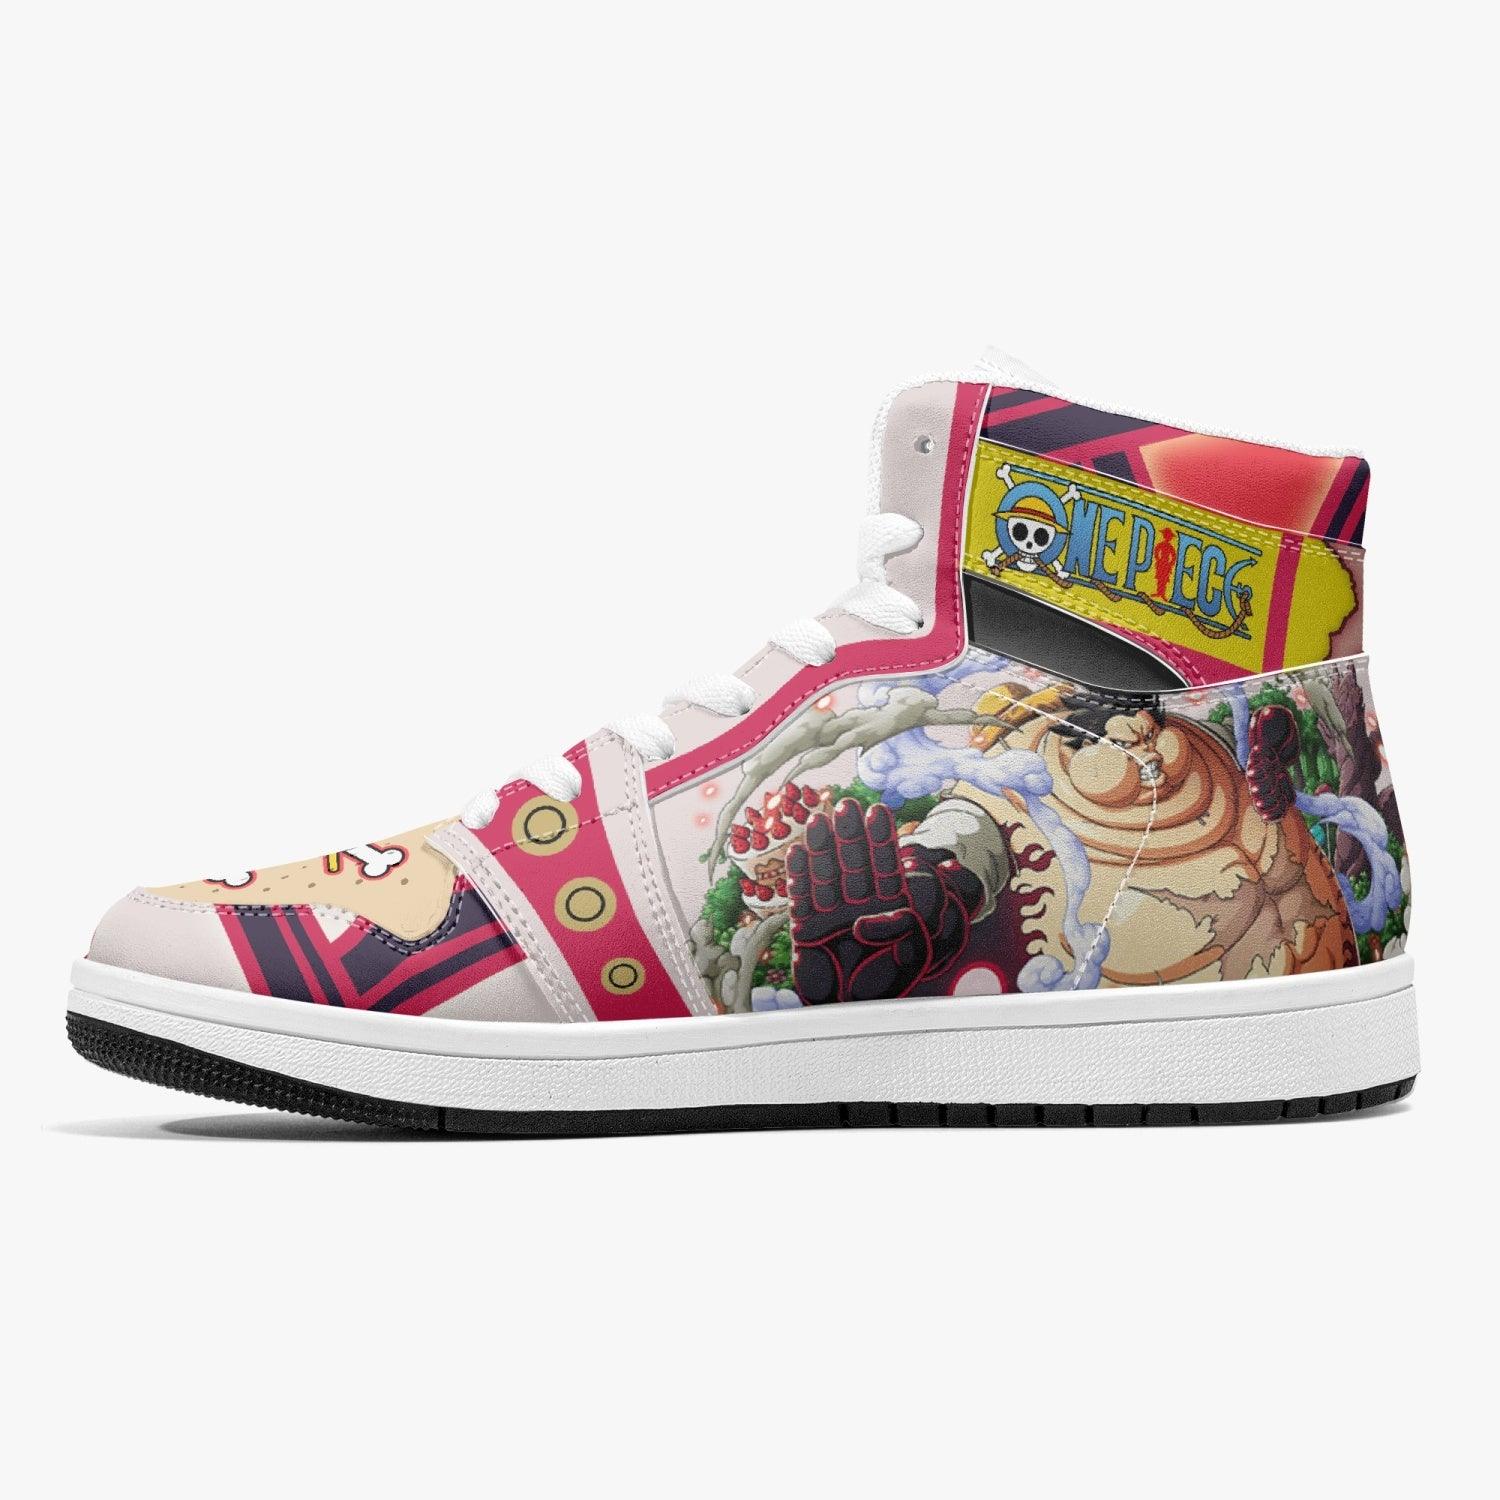 Monkey D. Luffy Gear 4th Tank Man One Piece J-Force Shoes-Black-Men-US5/EU38-Anime Shoe Shop